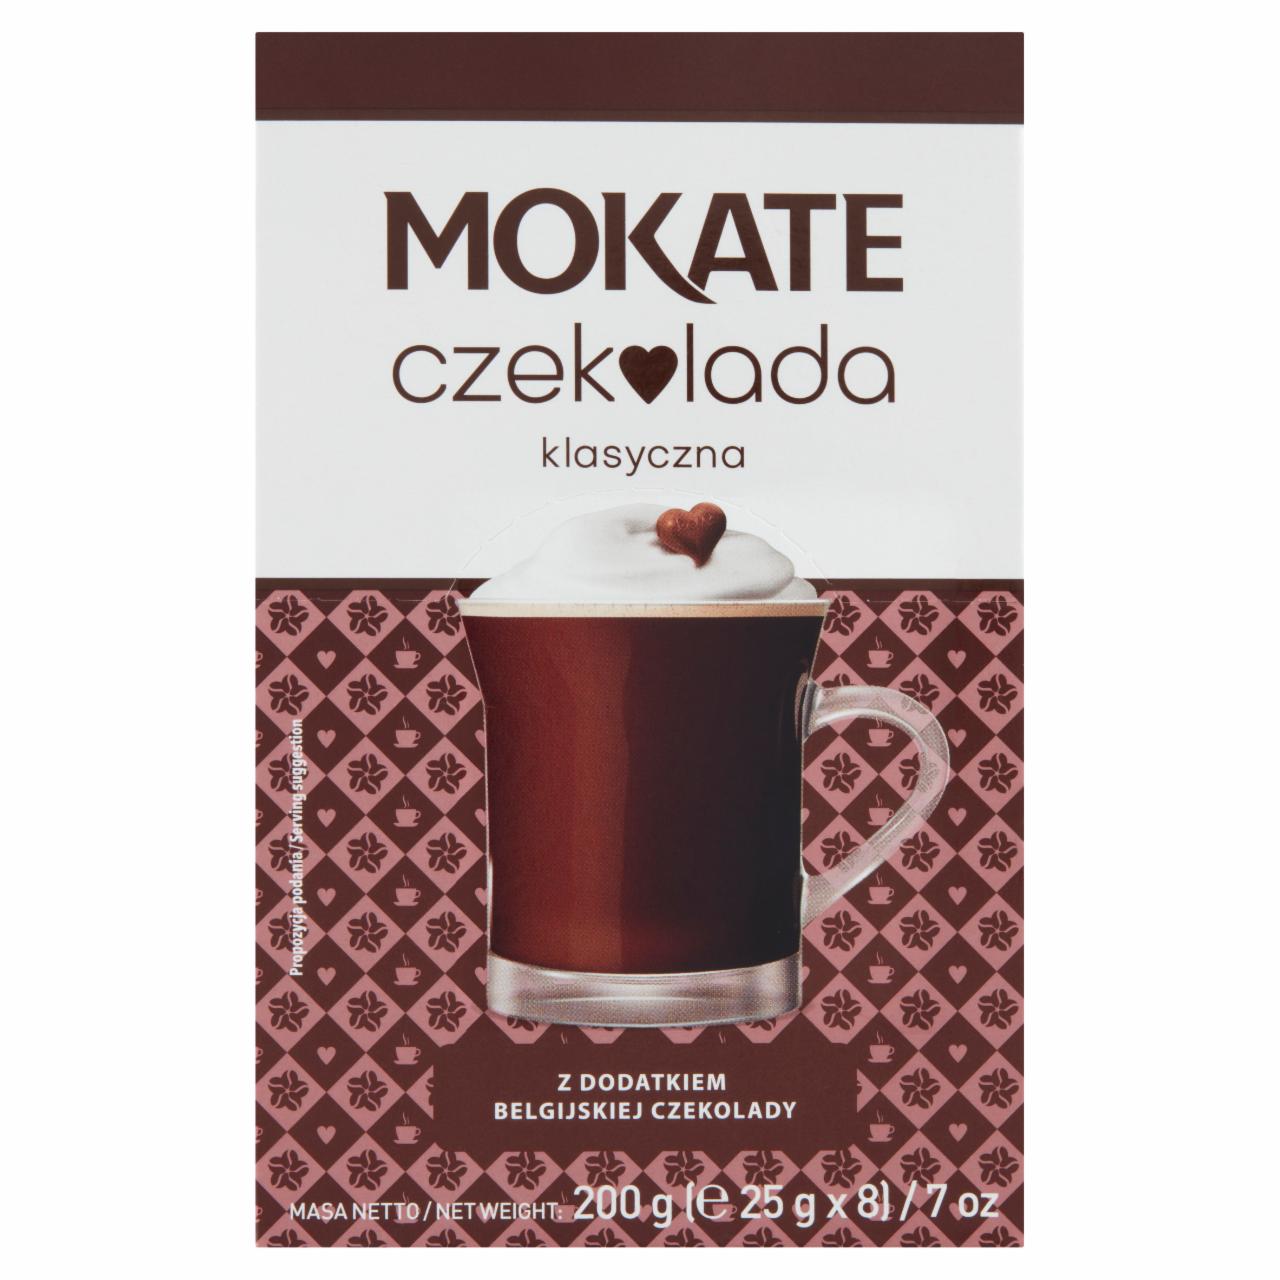 Zdjęcia - Mokate Czekolada klasyczna z dodatkiem belgijskiej czekolady 200 g (8 x 25 g)